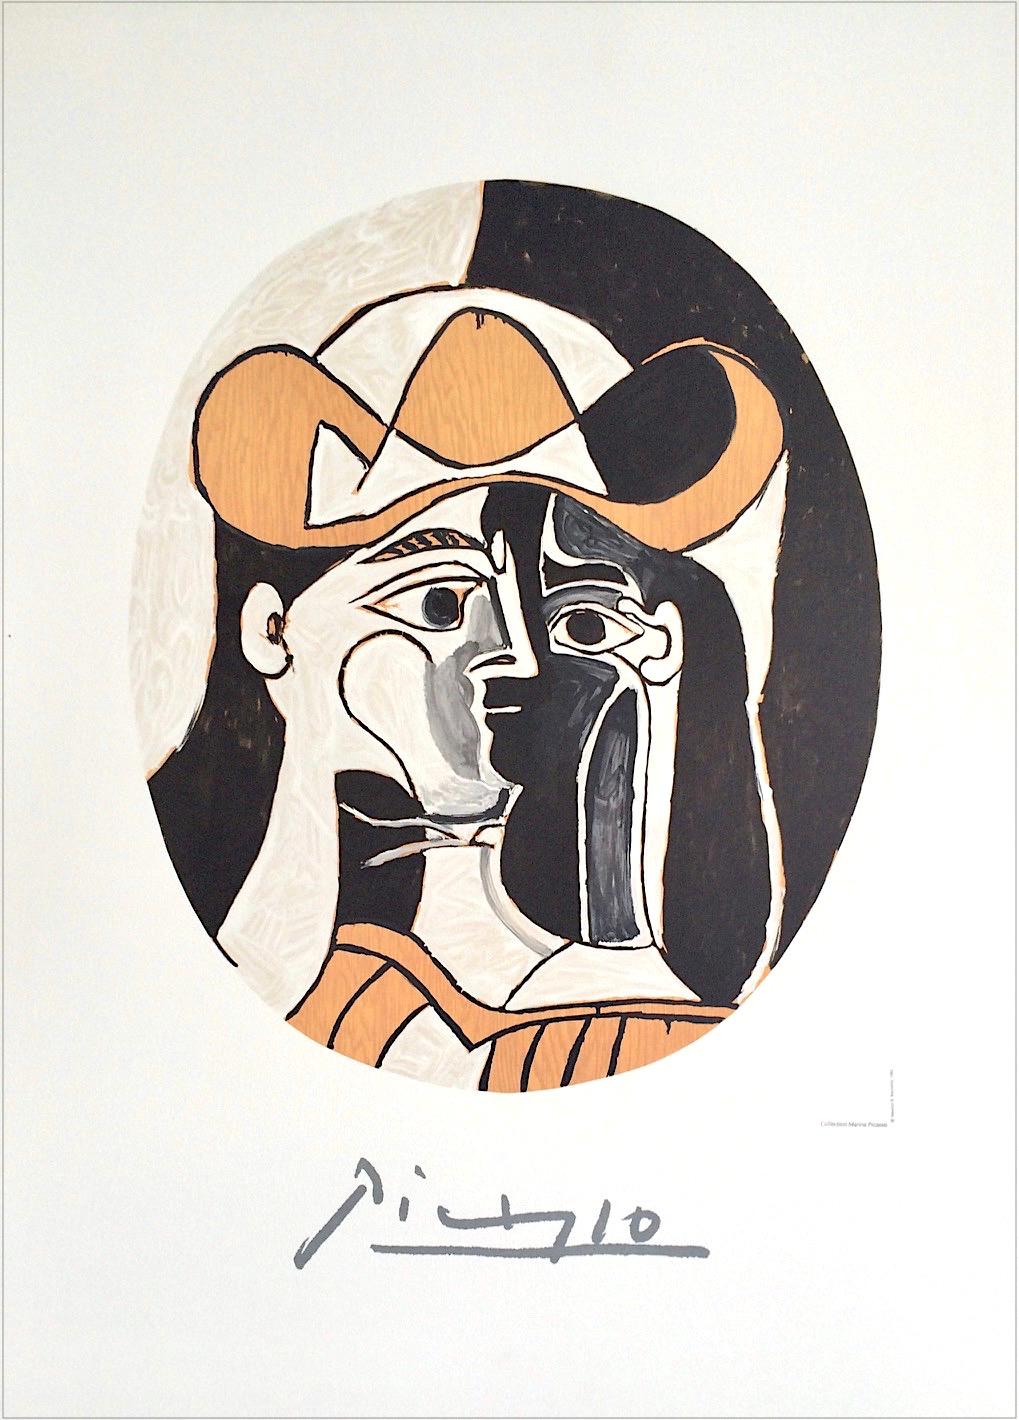 Artiste : Pablo Picasso, après, espagnol (1881 - 1973)
Titre : Femme au Chapeau, #J-25
Année de l'œuvre d'art originale : 1961
Médium : Lithographie sur papier Coventry, 100% sans acide
Édition de 1000, non numérotée, signature imprimée approuvée